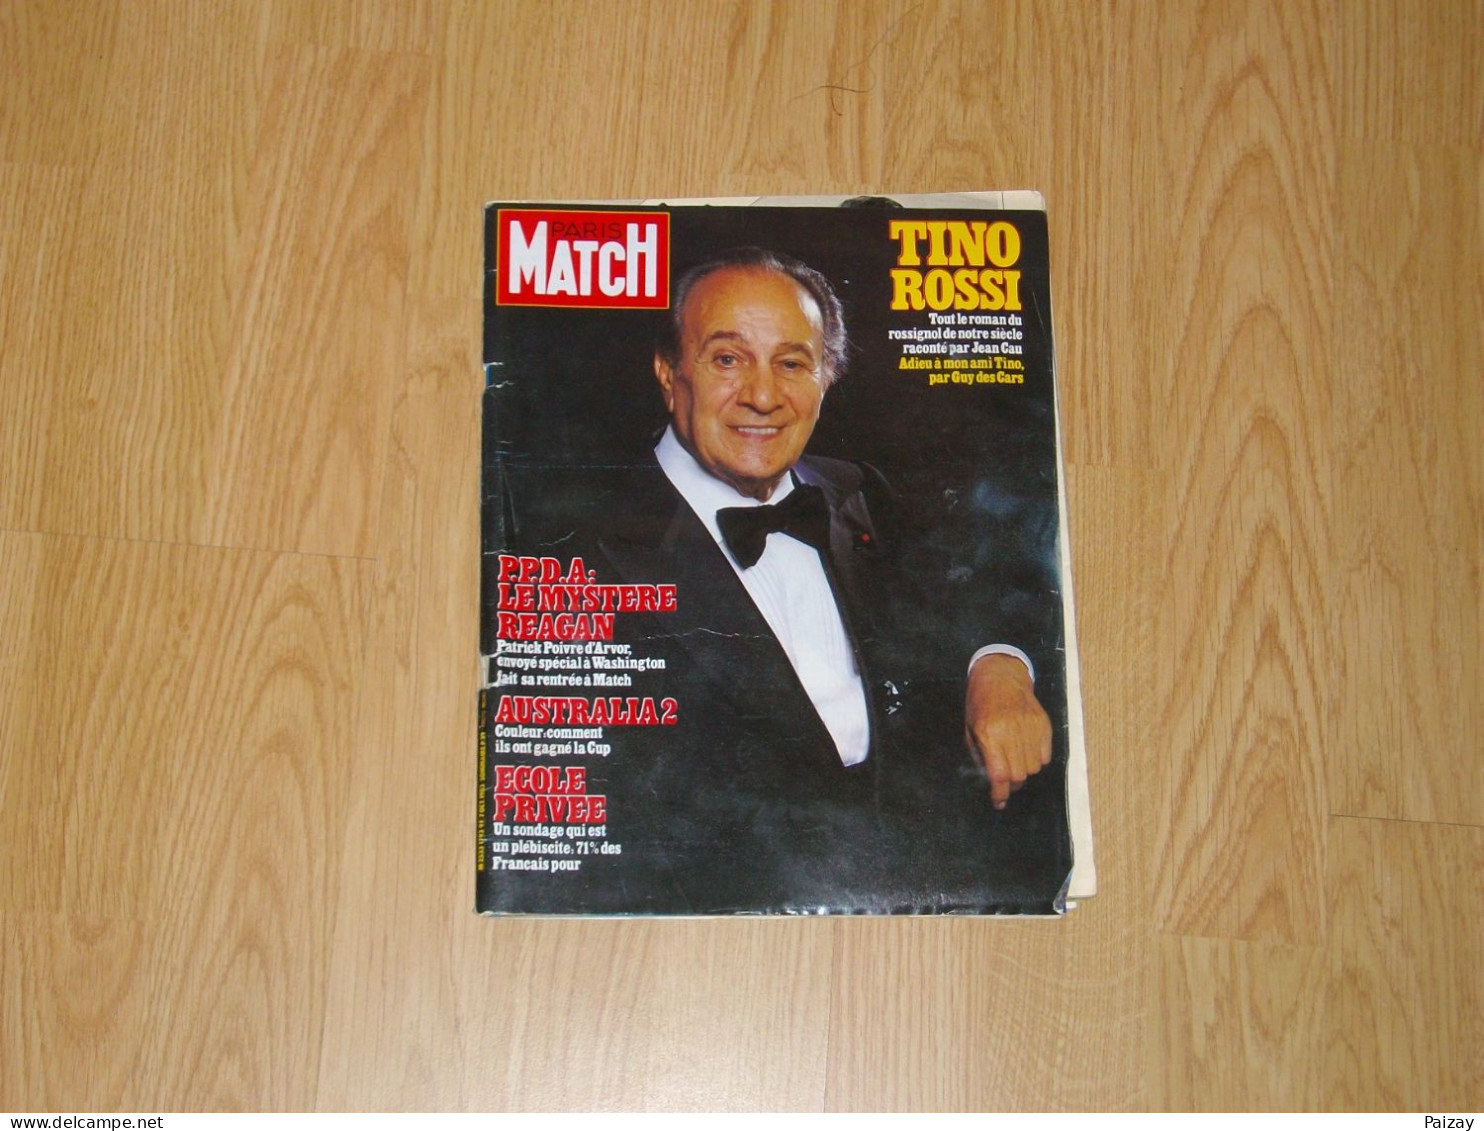 PARIS-MATCH Tino ROSSI - 7 Octobre 1983. 170 Pages PPDA Le Mystère Reagan USA Ecole Privée Austalia 2 - Music